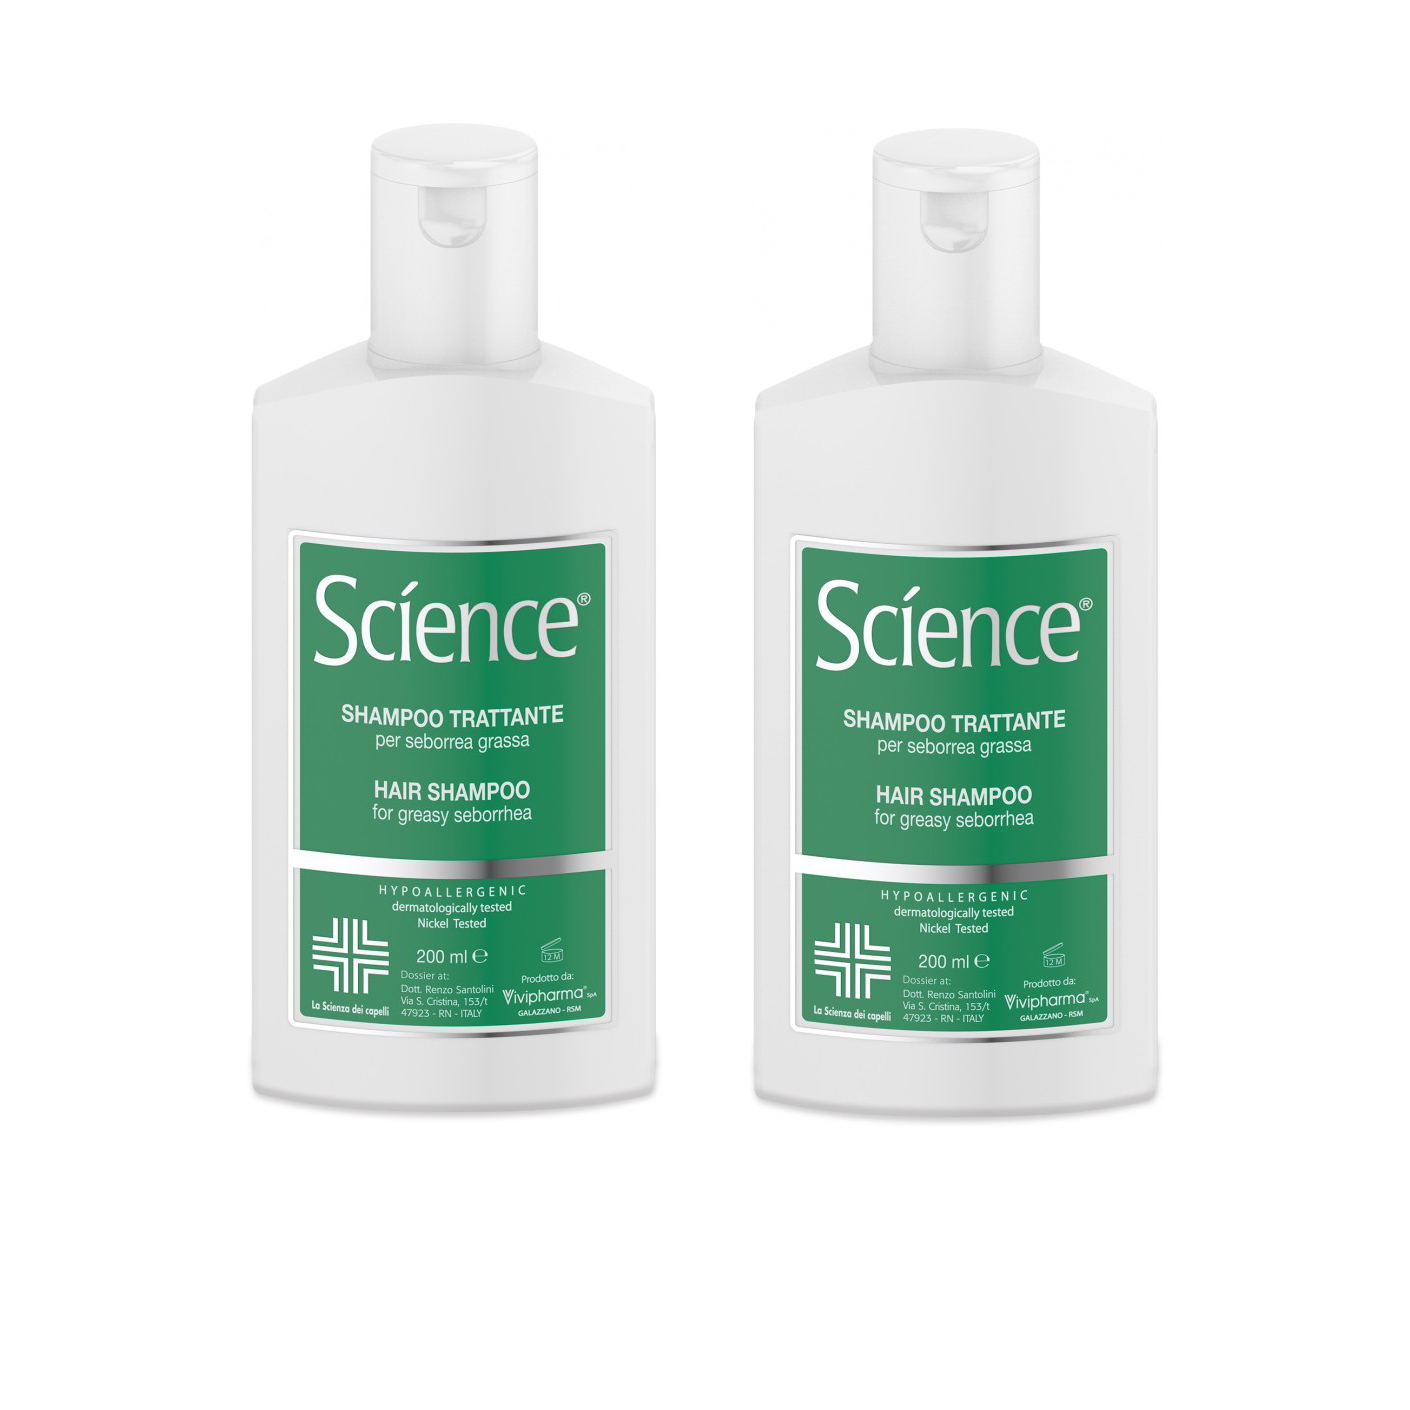 szampon la science ceneo